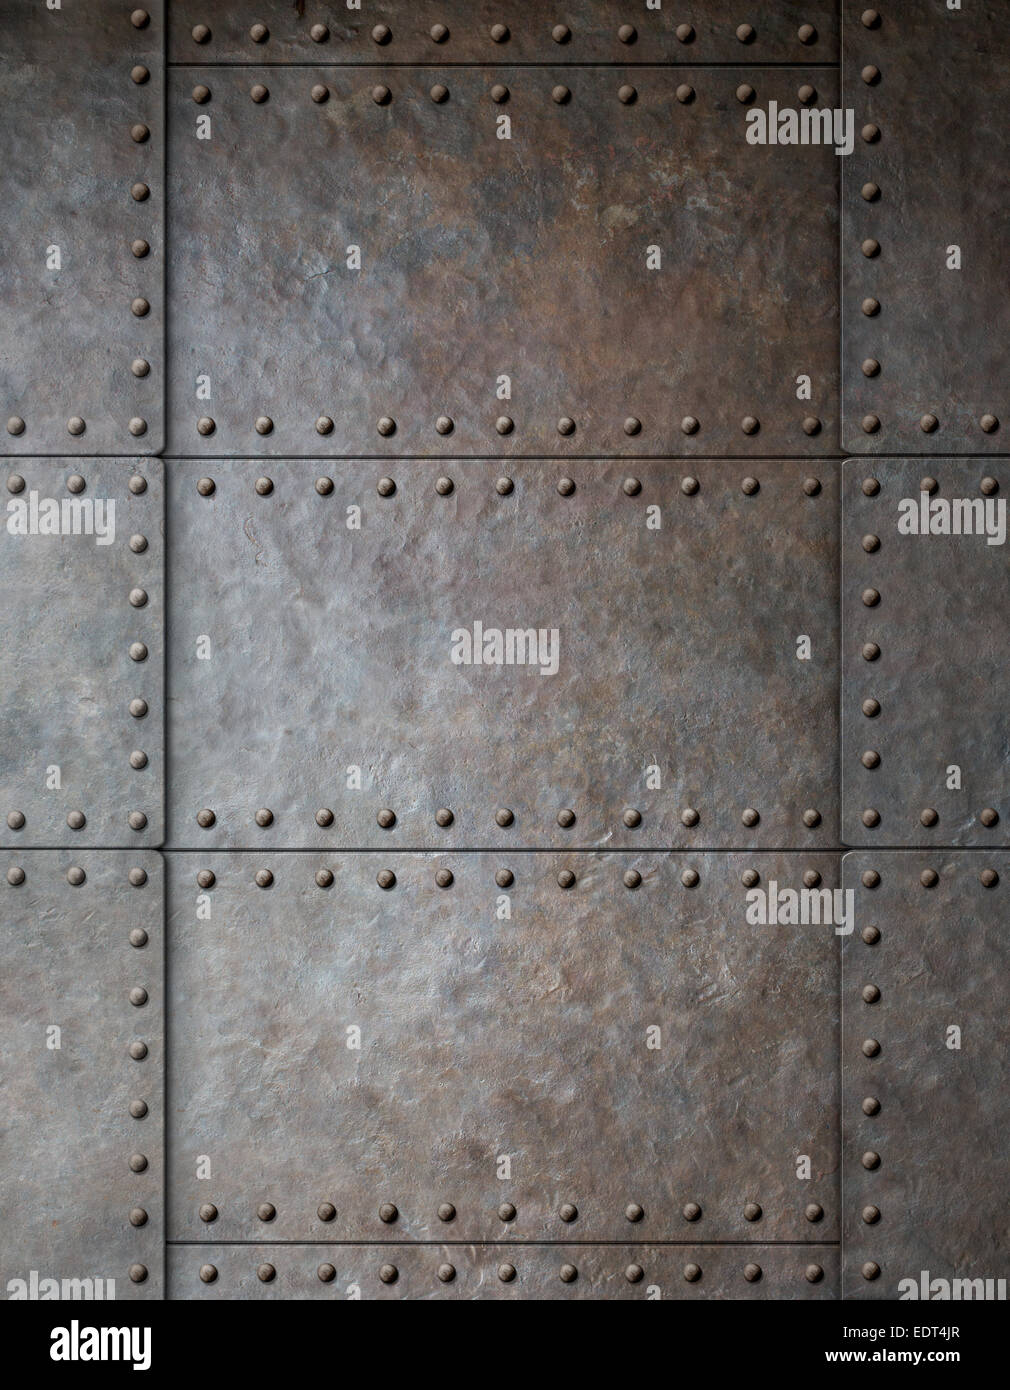 Stahl Metall Rüstung Hintergrund mit Nieten Stockfotografie - Alamy